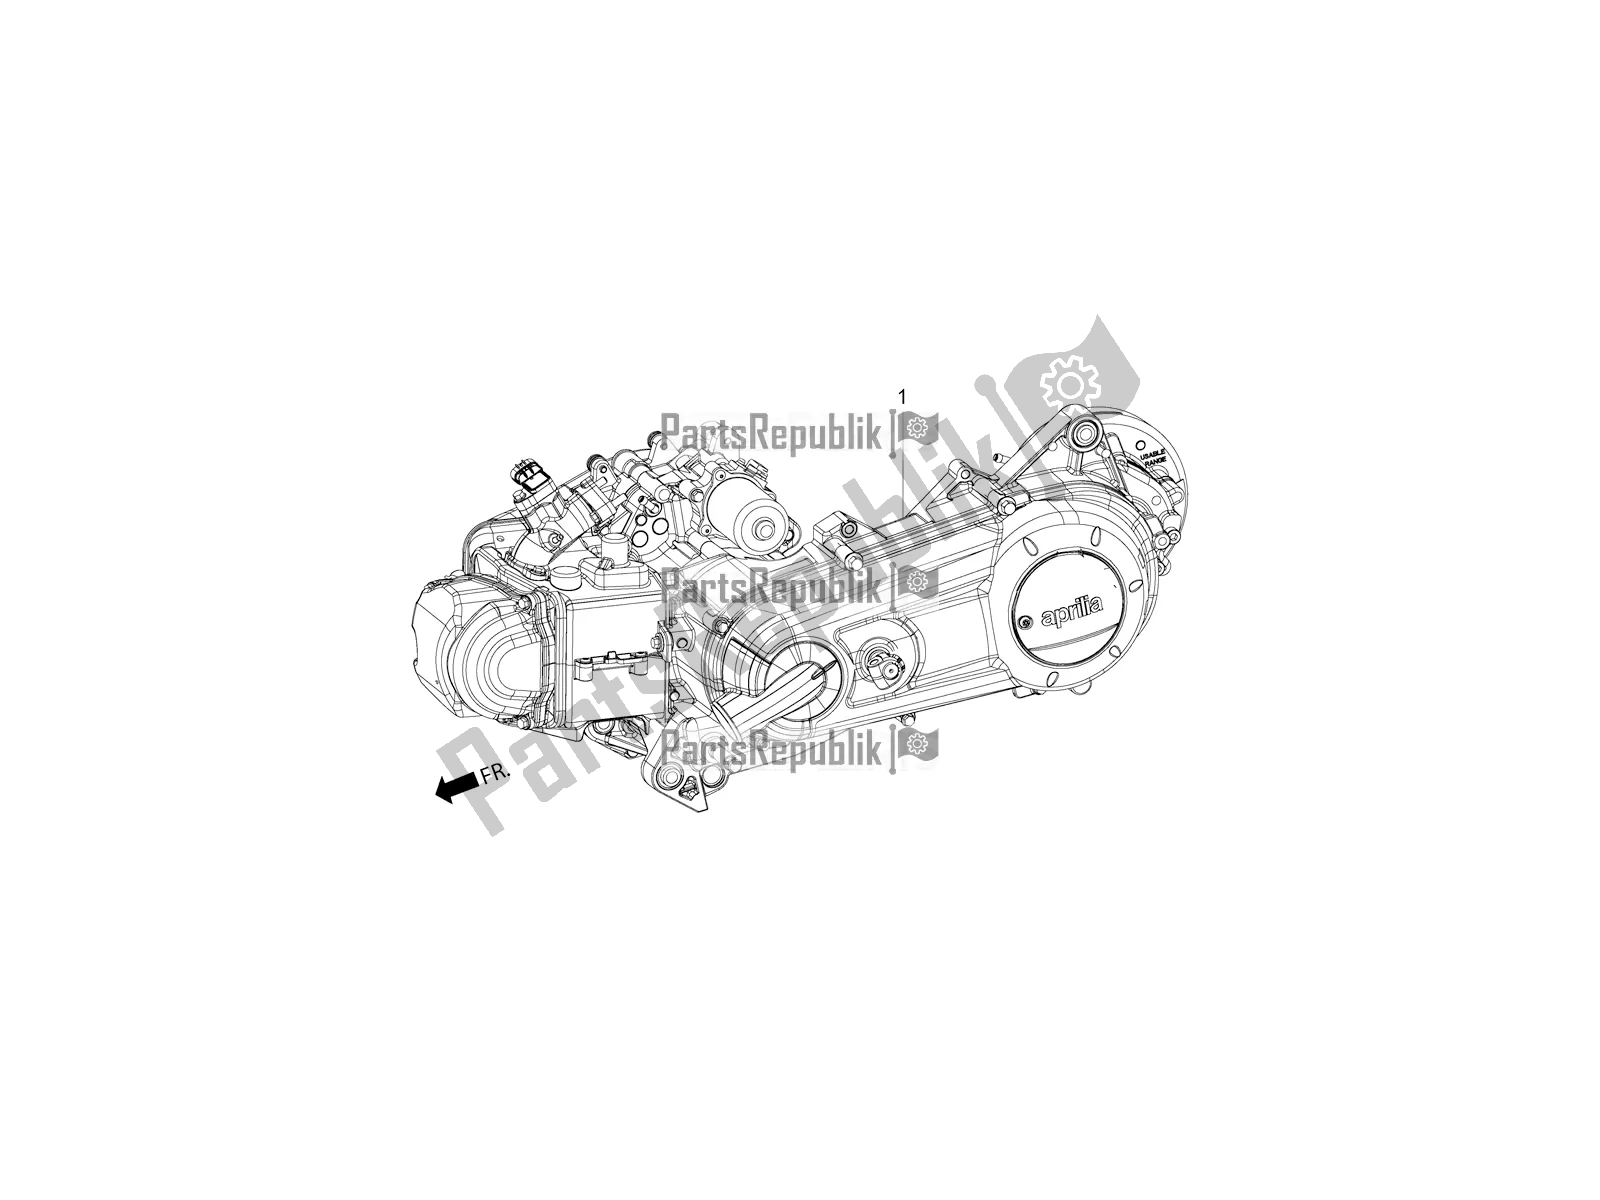 Toutes les pièces pour le Complete Engine du Aprilia SR Motard 150 ABS Apac 2020